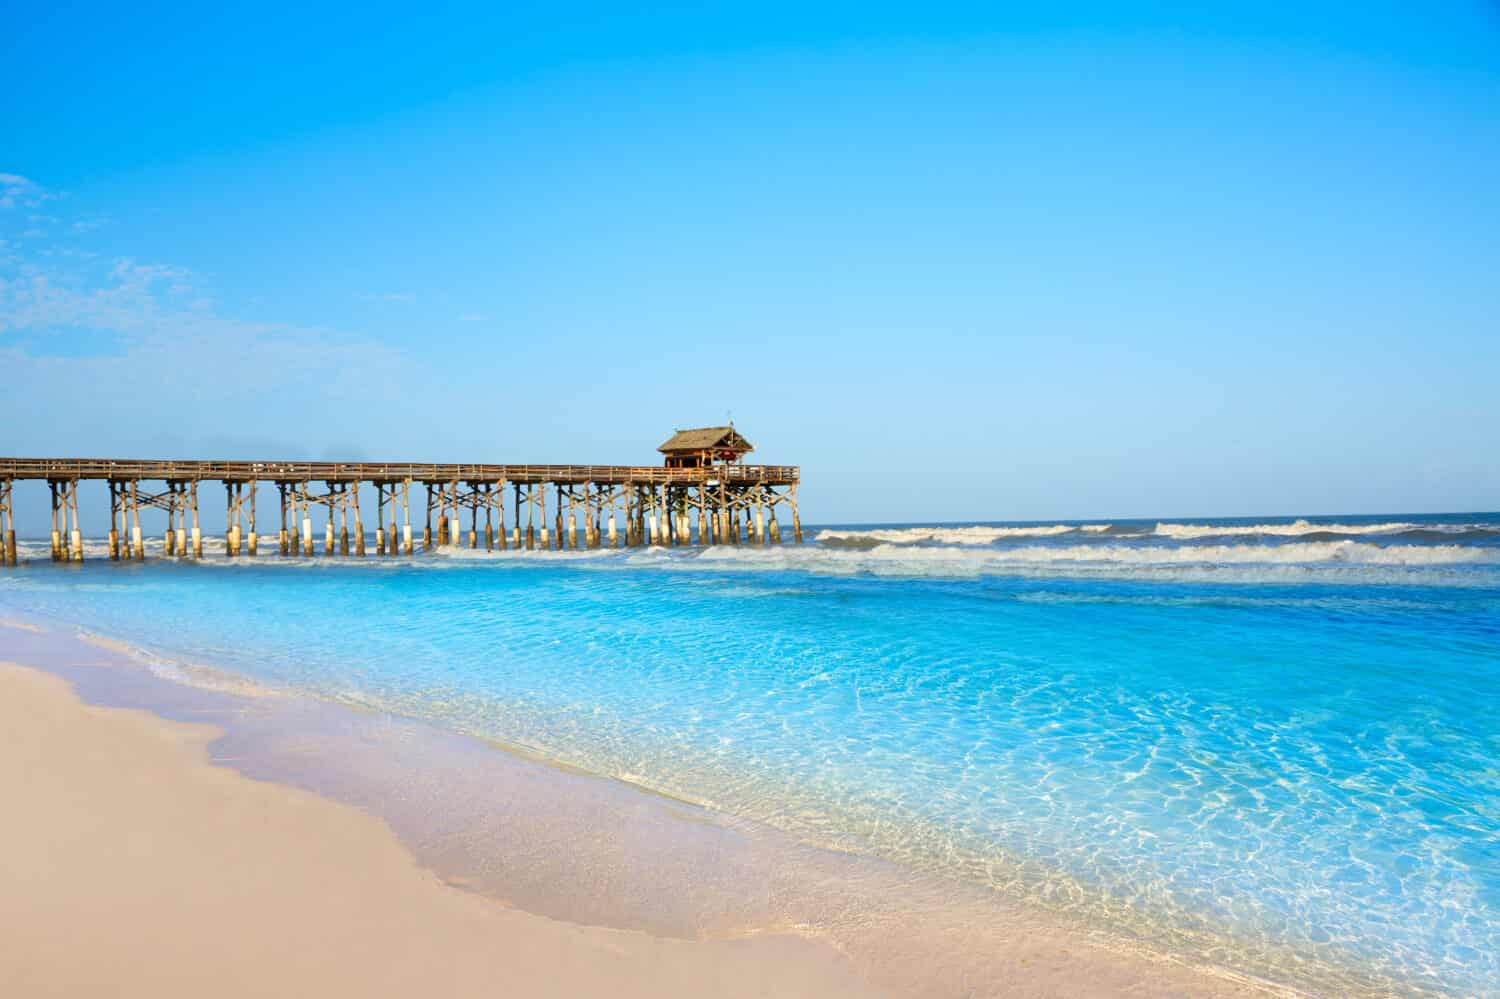 Cocoa Beach pier in Cape Canaveral of Florida near Orlando